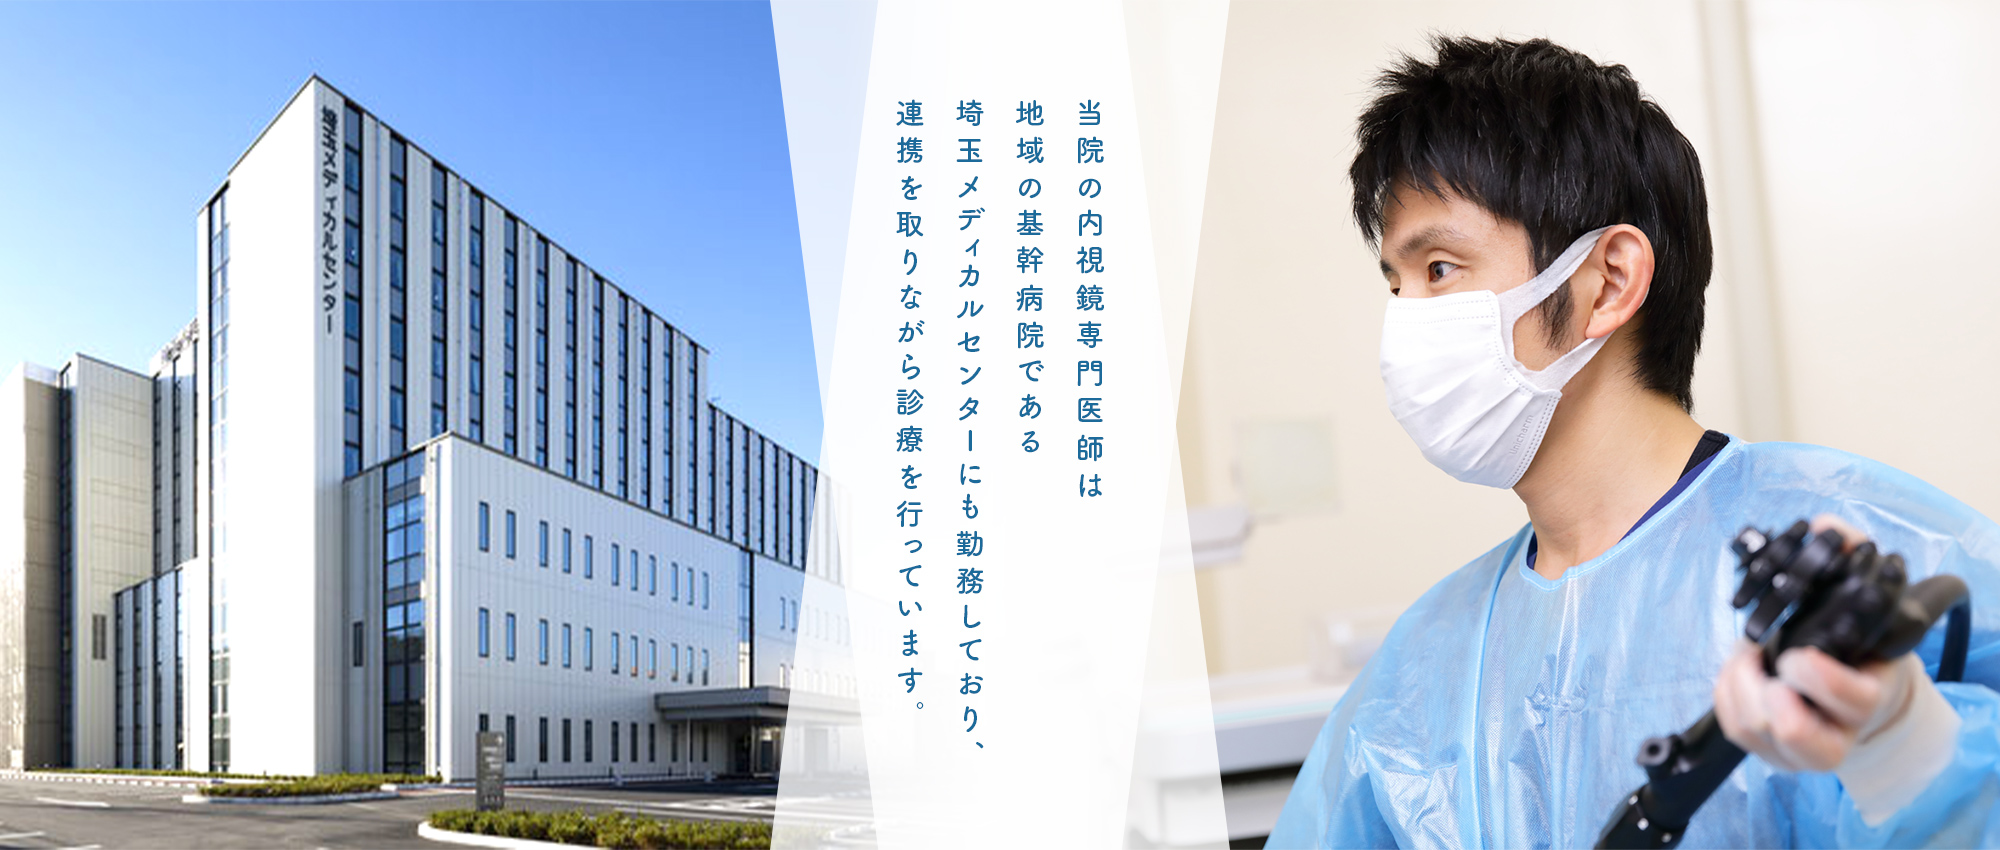 当院の内視鏡専門医師は地域の基幹病院である埼玉メディカルセンターにも勤務しており、連携を取りながら診療を行っています。